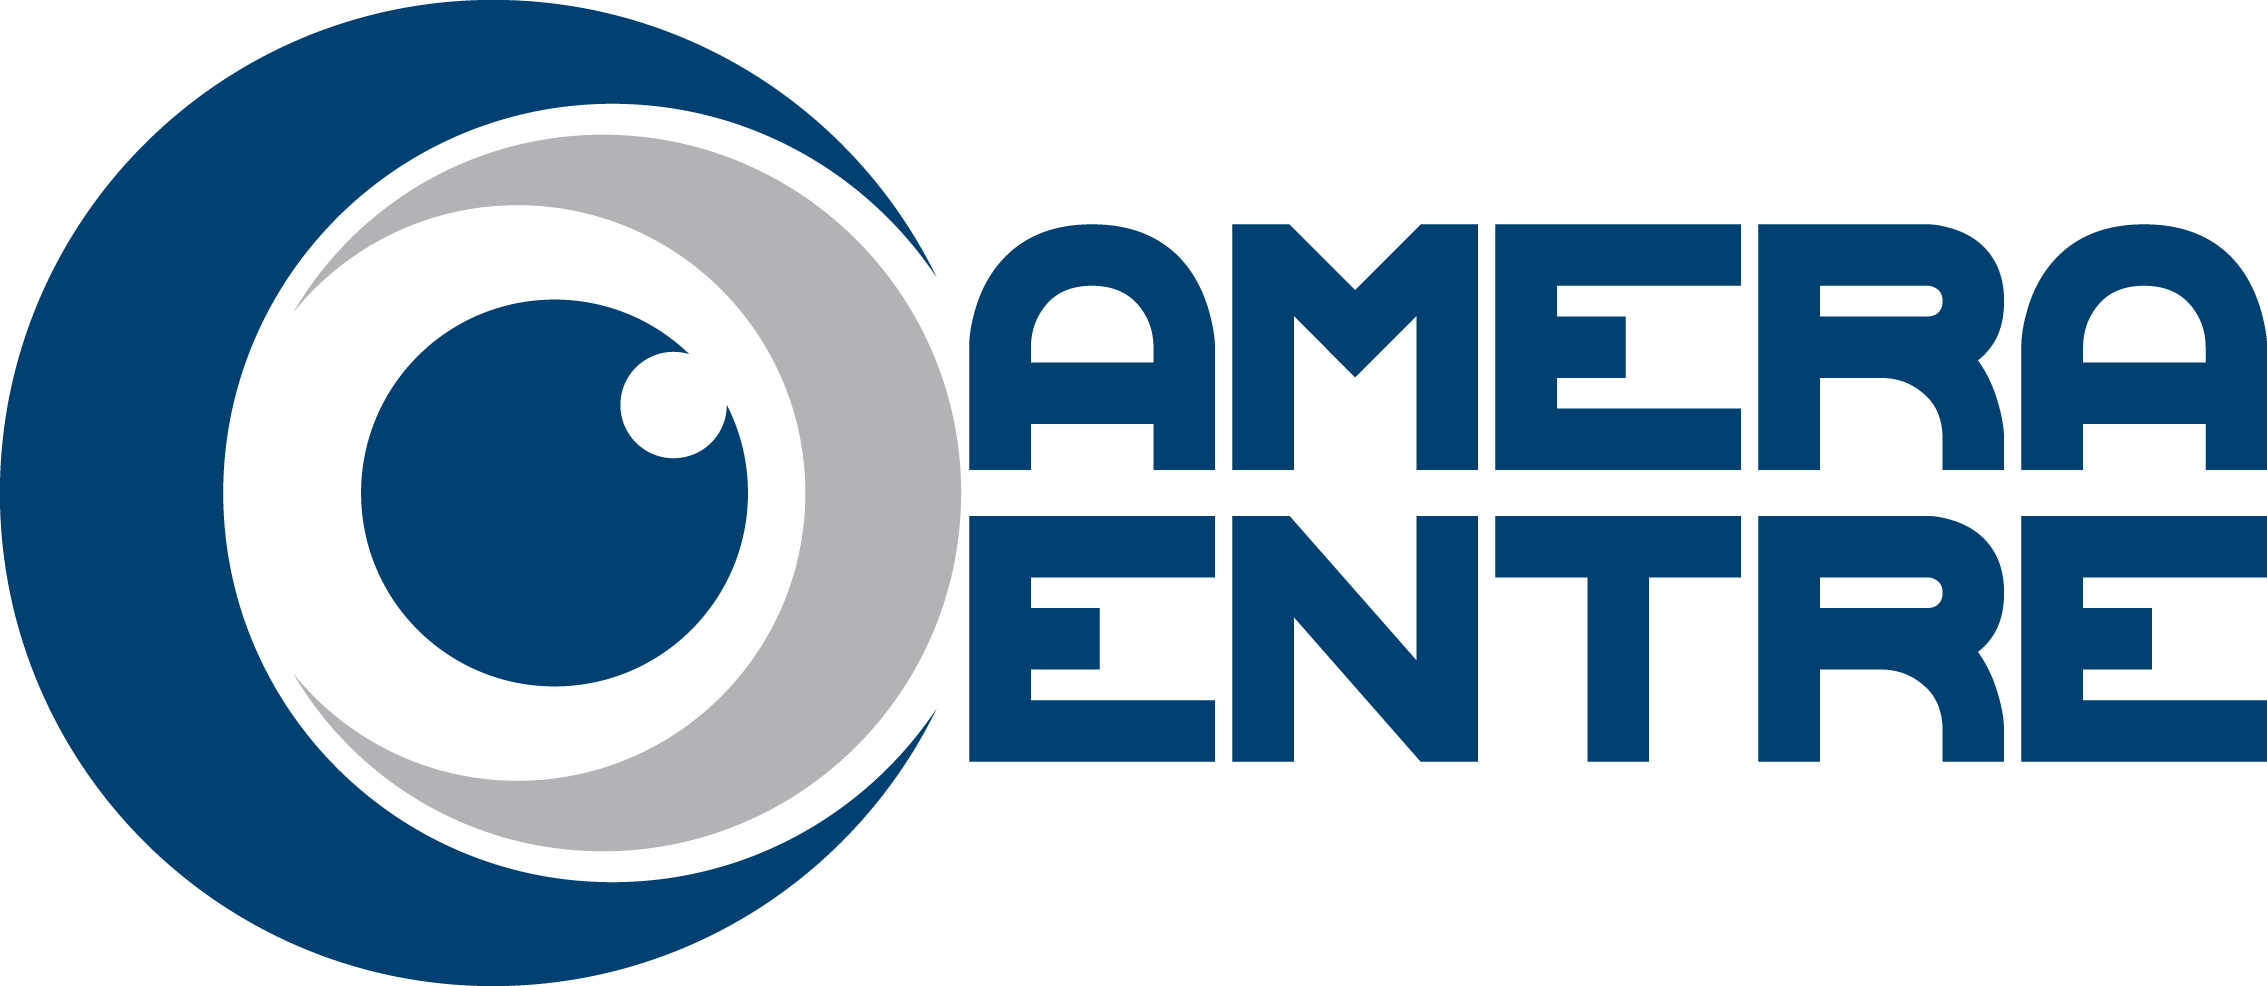 Camera Centre Logo